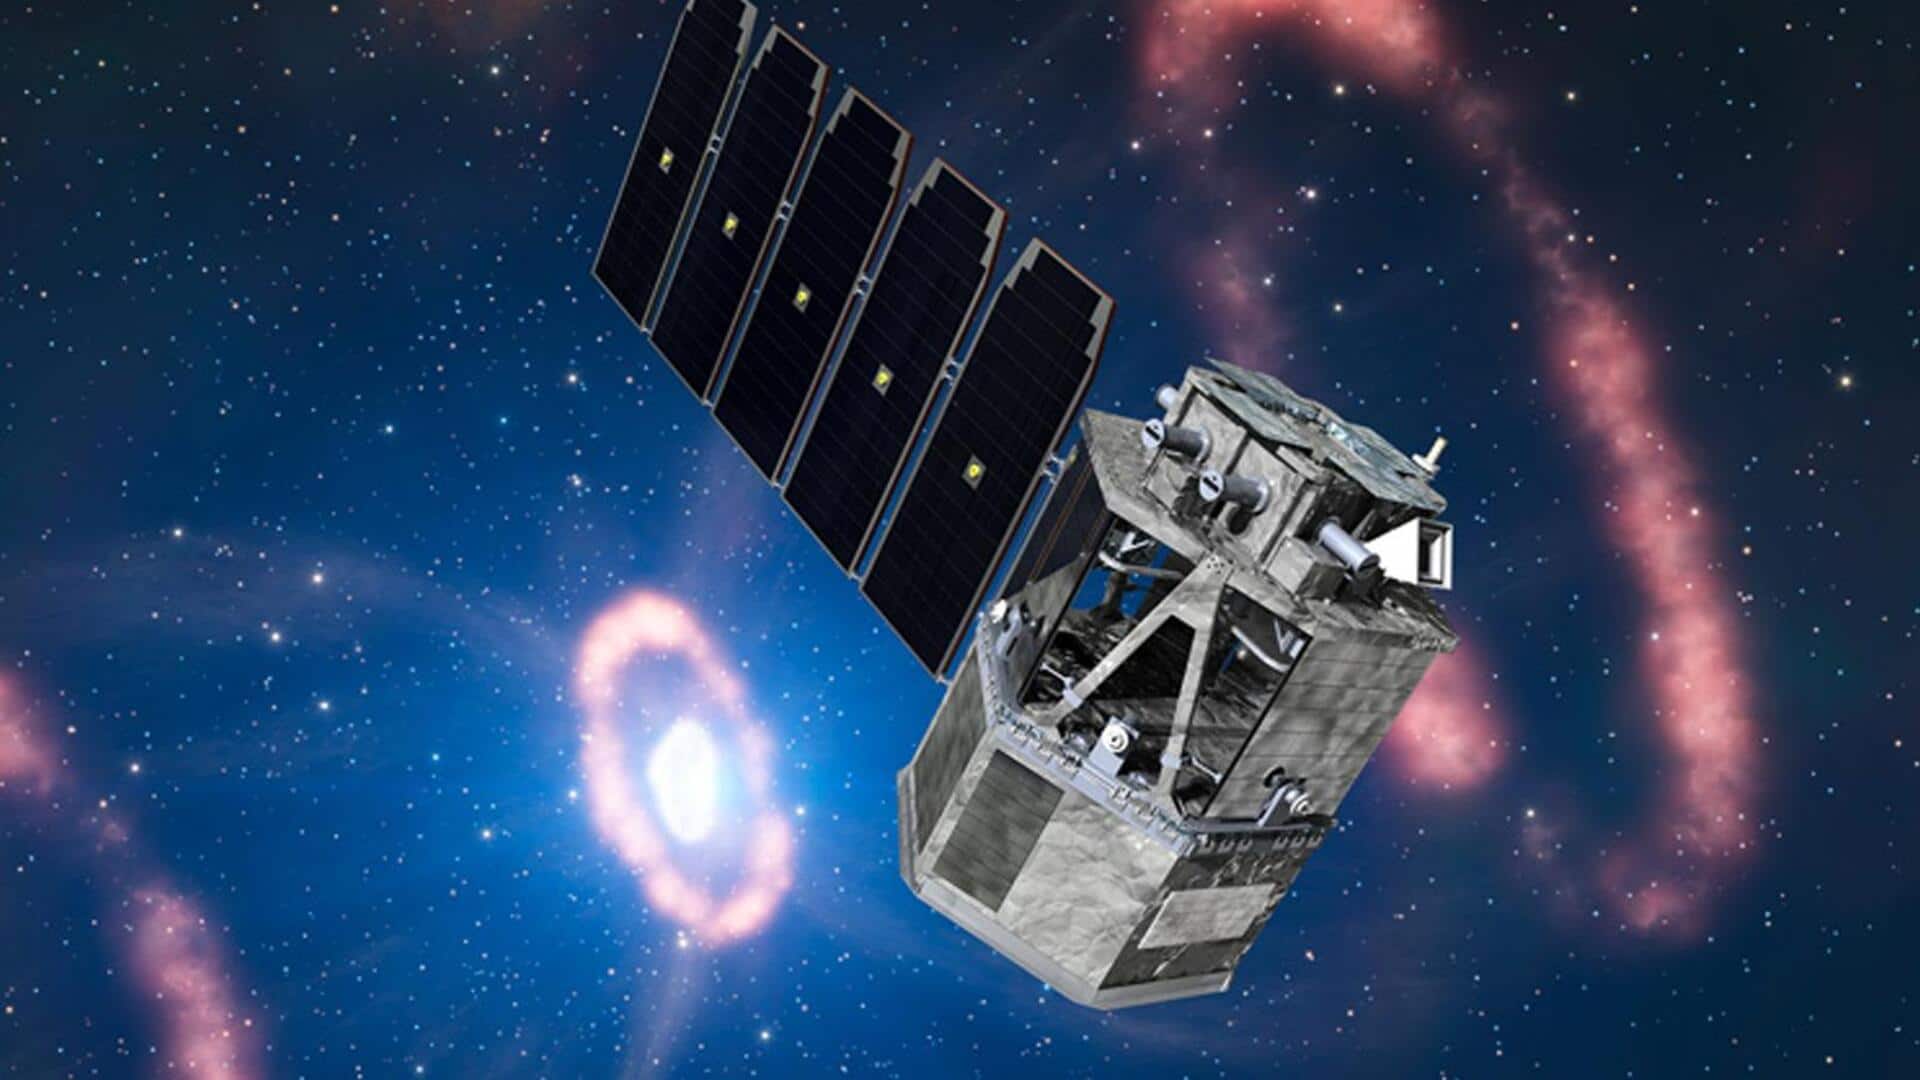 स्पेस-X अंतरिक्ष में भेजेगी नासा का नया कॉम्पटन स्पेस टेलीस्कोप, करेगा यह काम 